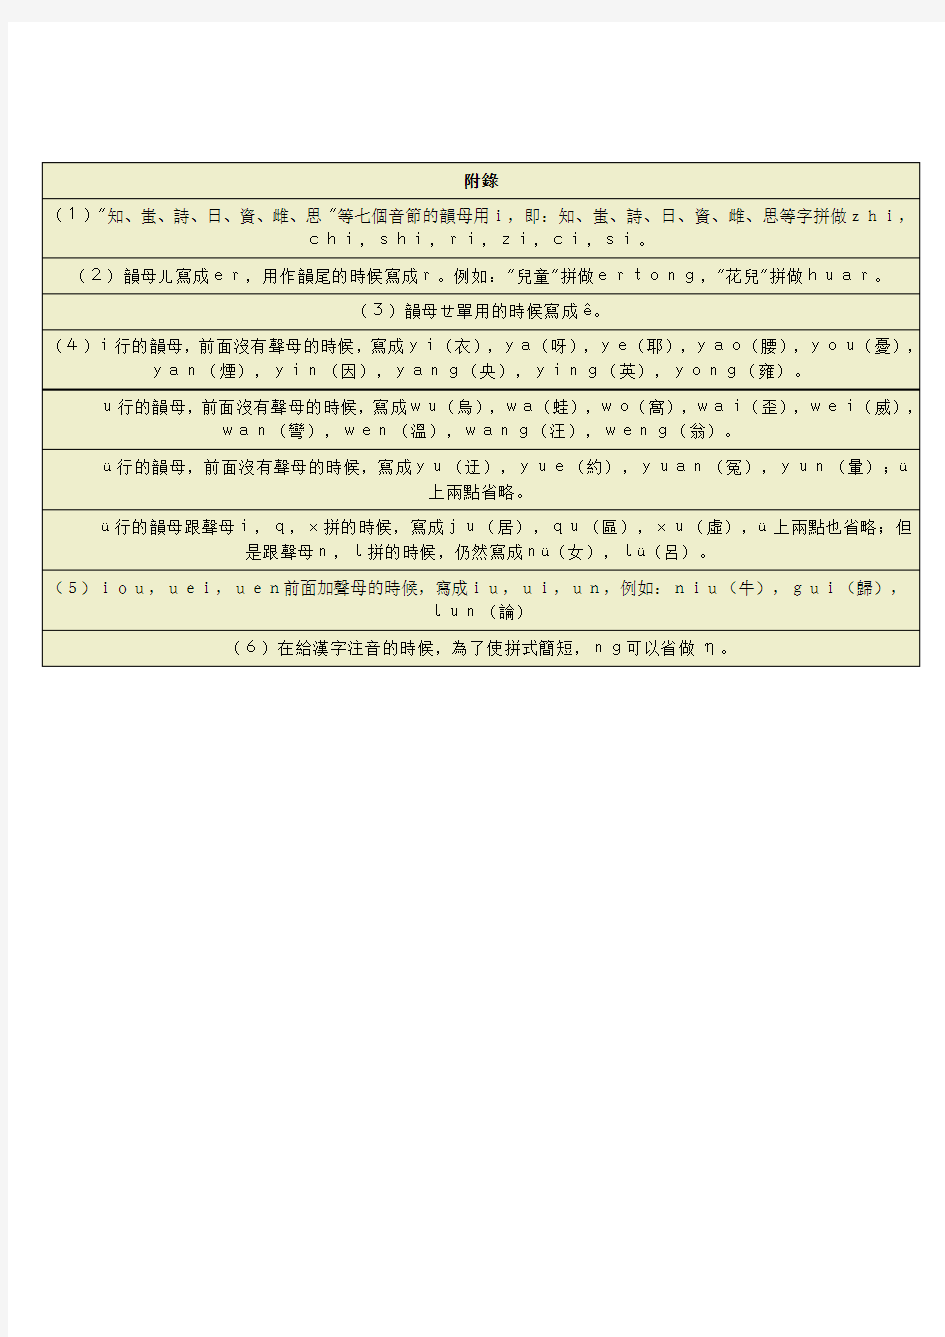 台湾拼音输入法对照表